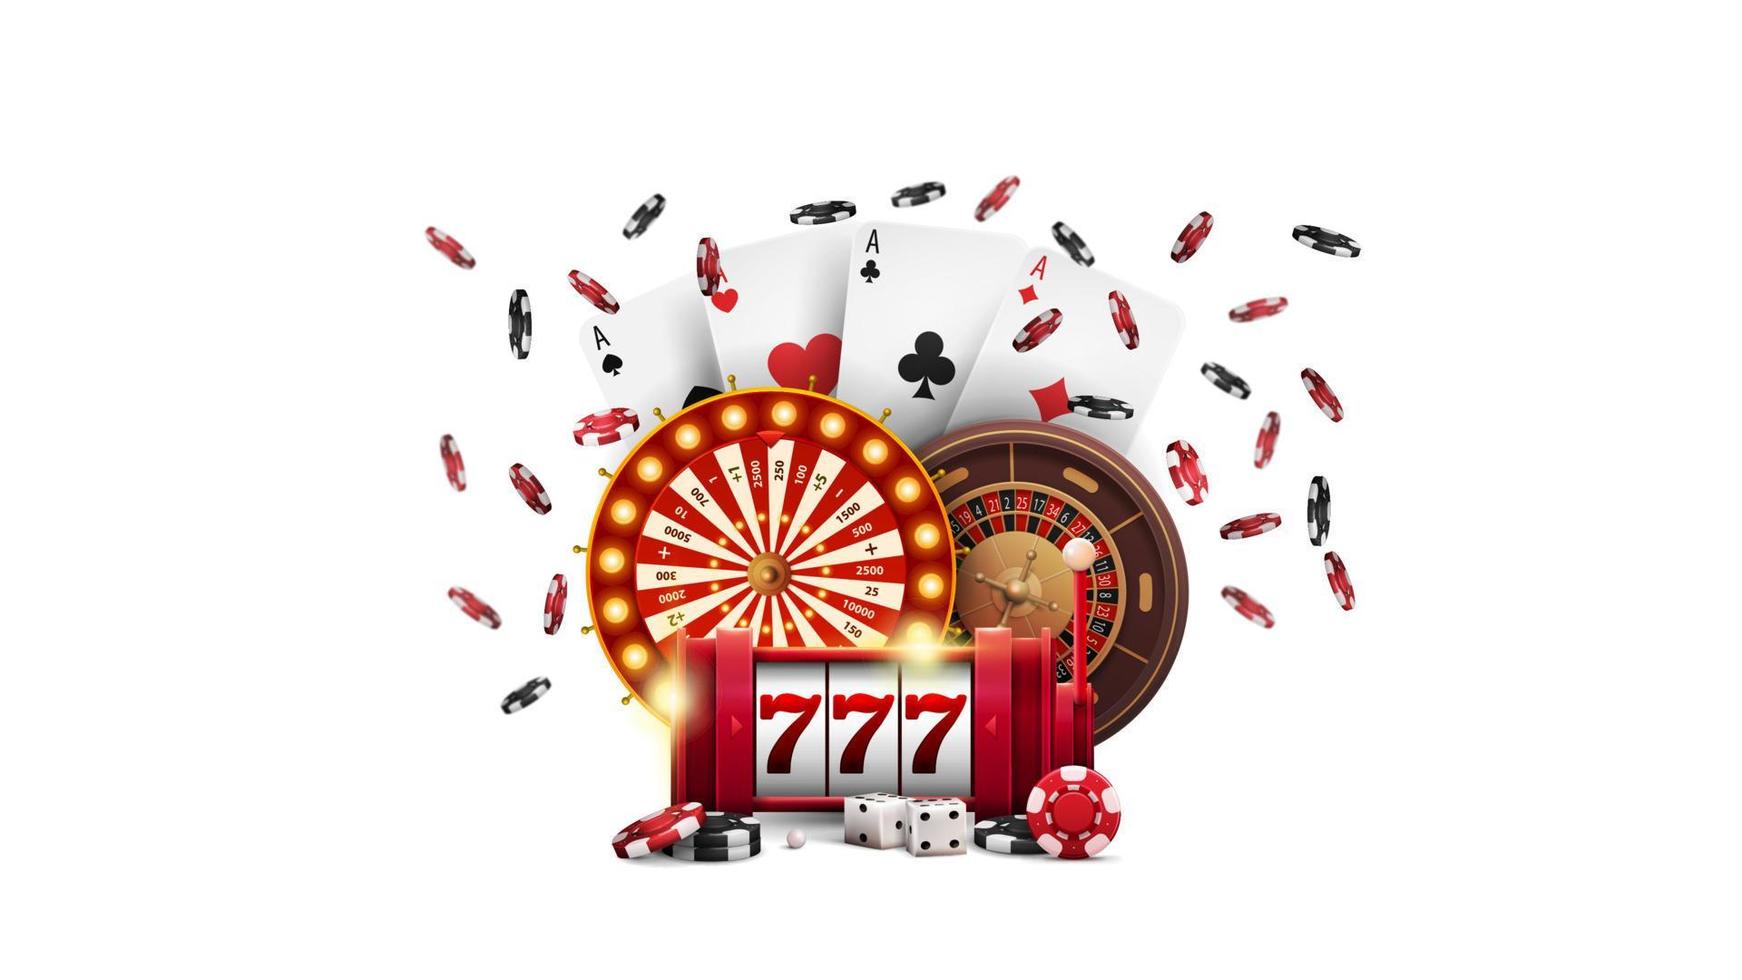 Kasinoradvermögen, roter Spielautomat, Rouletterad, Pokerchips und Spielkarten lokalisiert auf weißem Hintergrund vektor